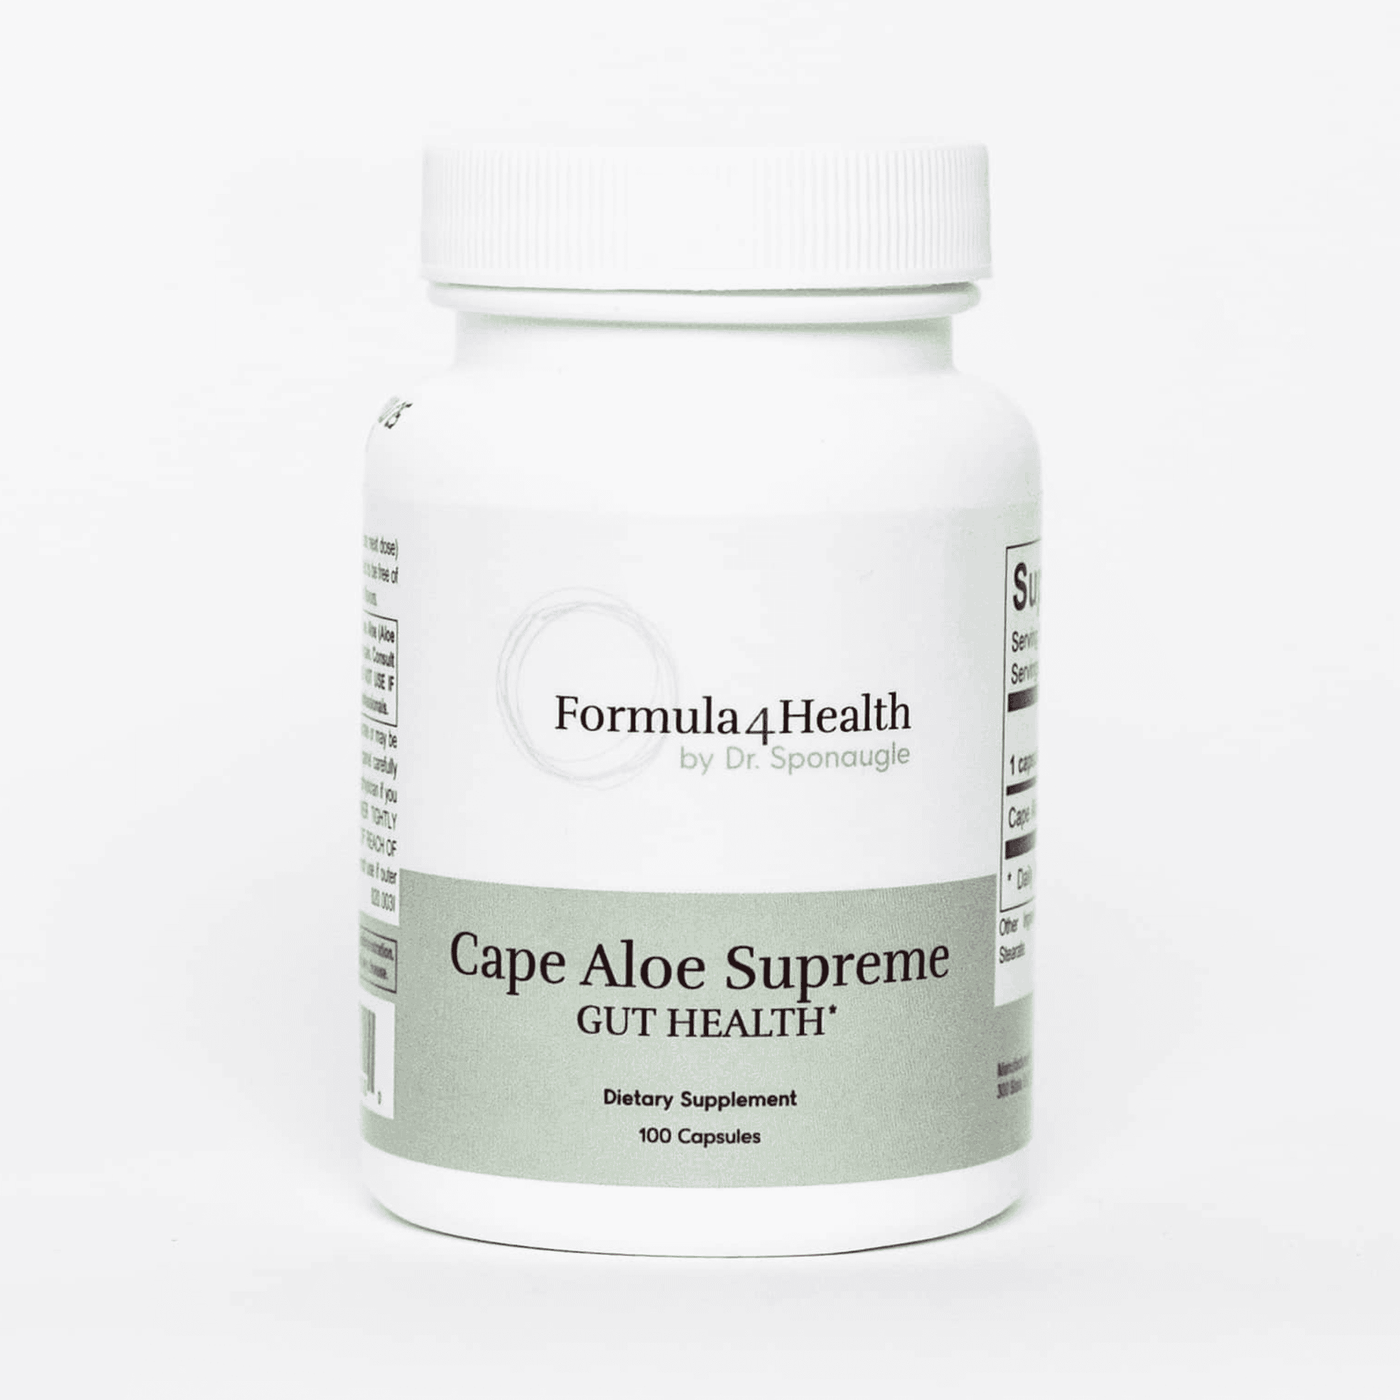 Cape Aloe Supreme